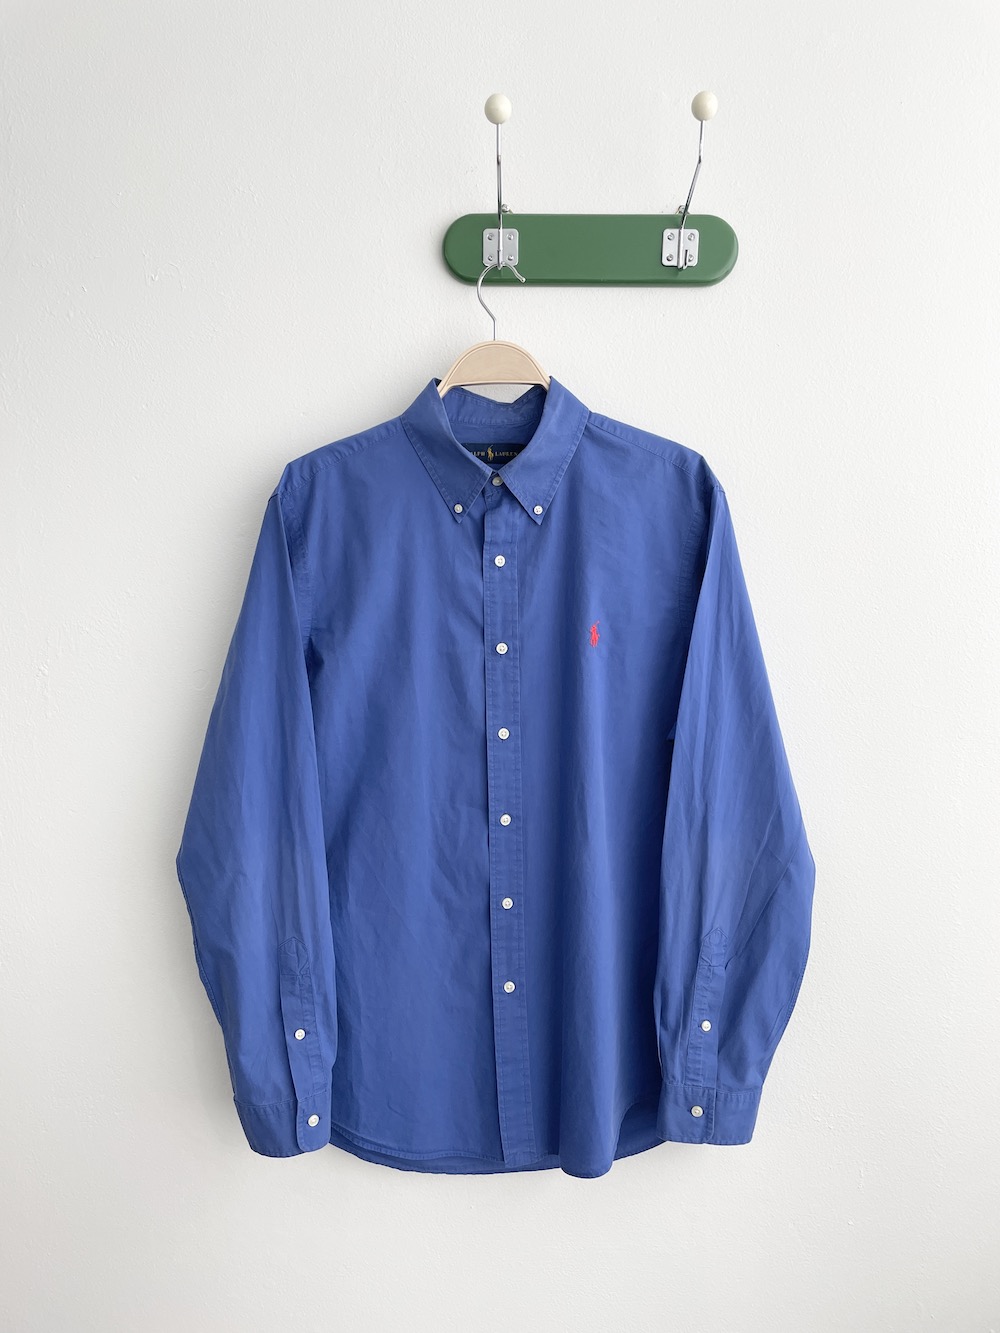 [ L ] Polo Ralph Lauren Shirt (6487)